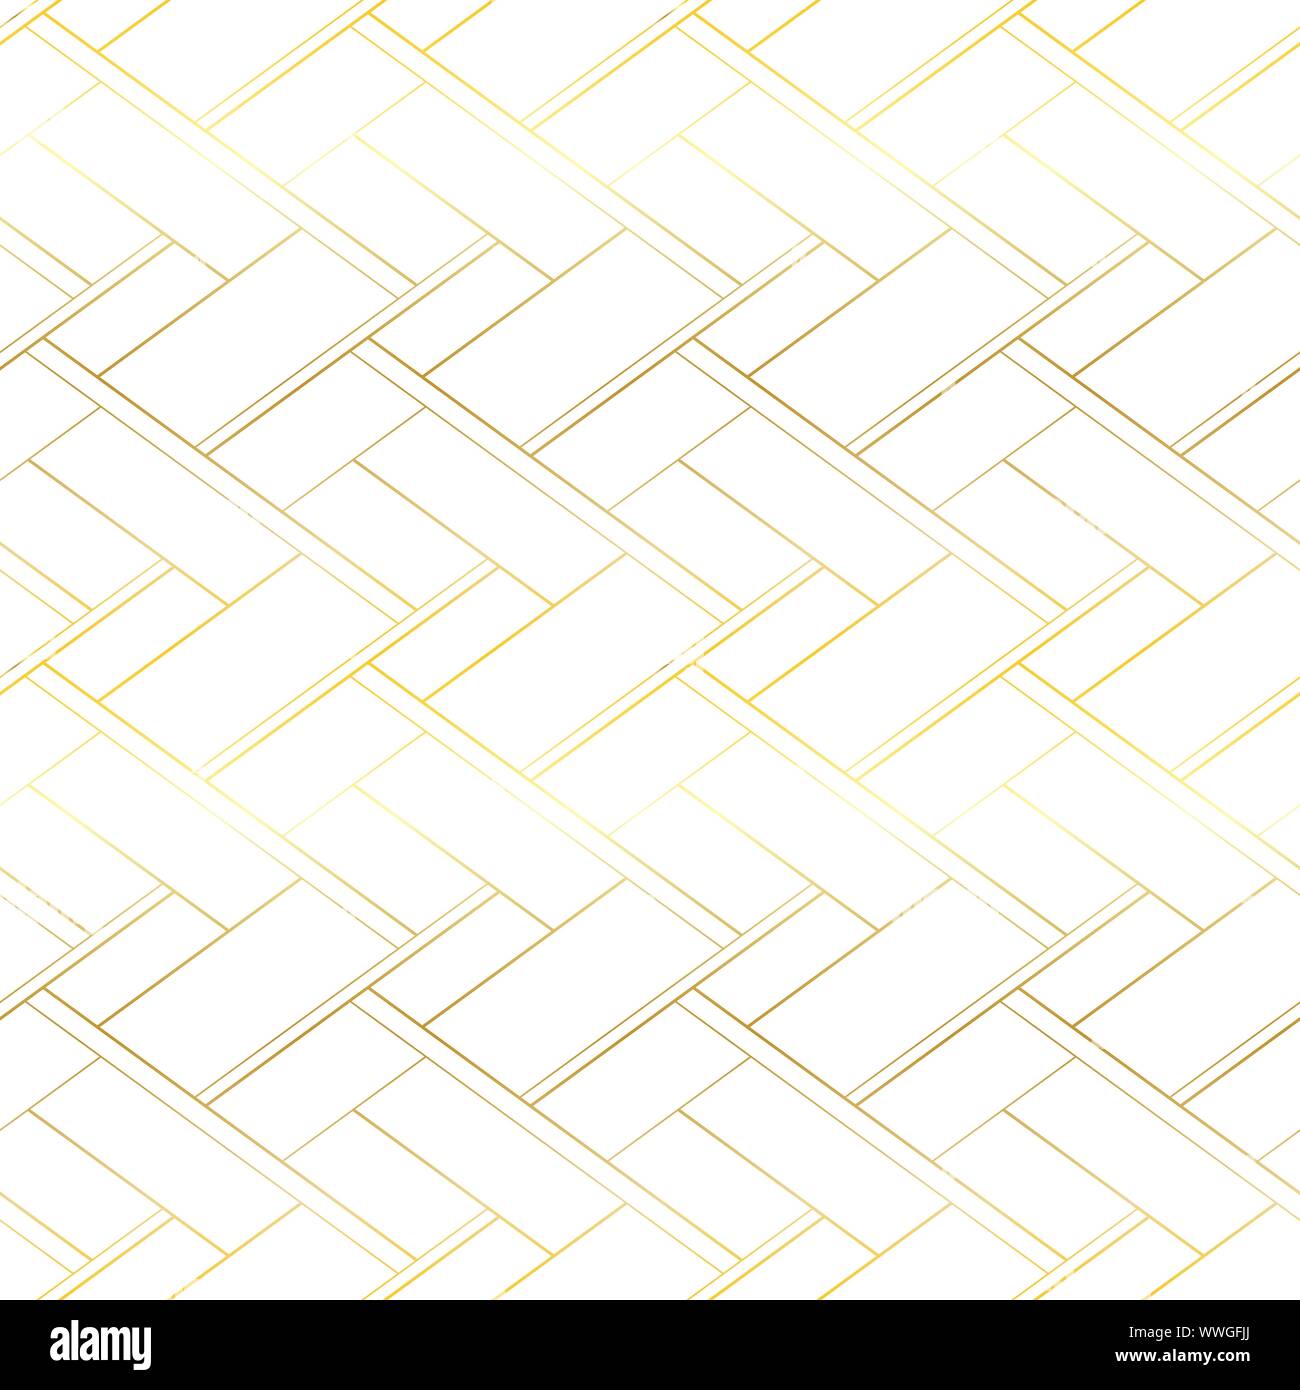 Vecteur de luxe modèle homogène. Golden cross lines abstract background Illustration de Vecteur